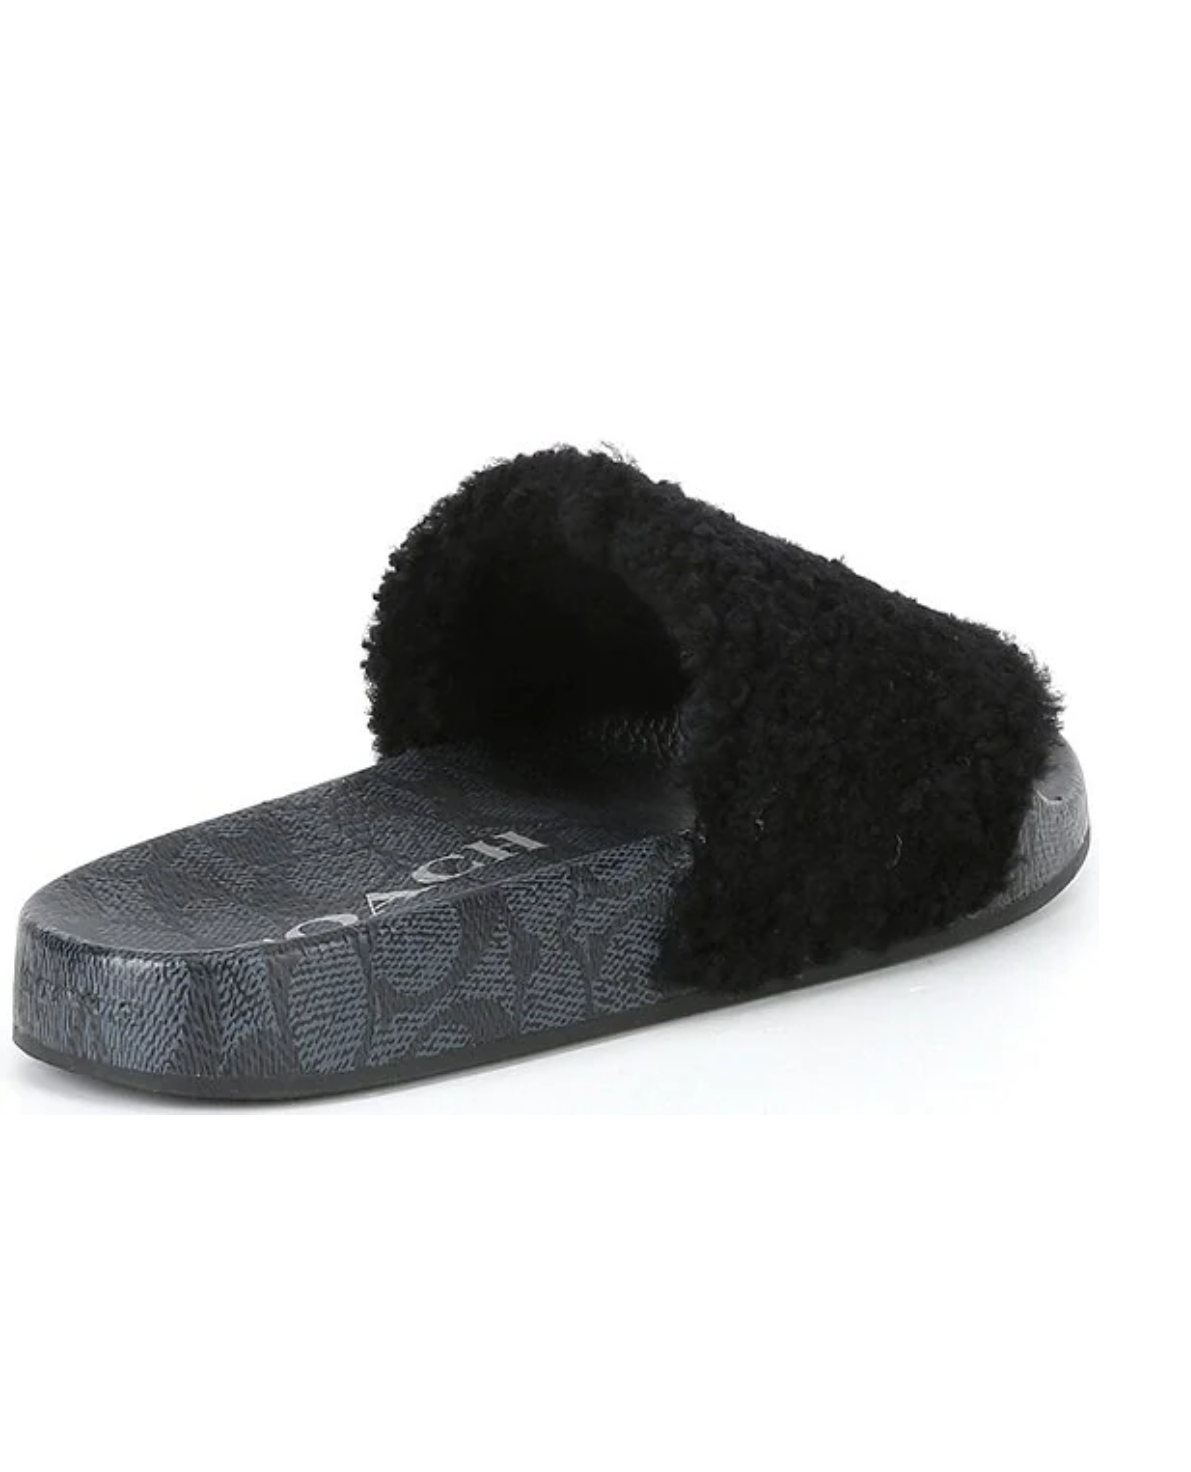 Faux fur sandals GUESS Black size 10 US in Faux fur - 27220336